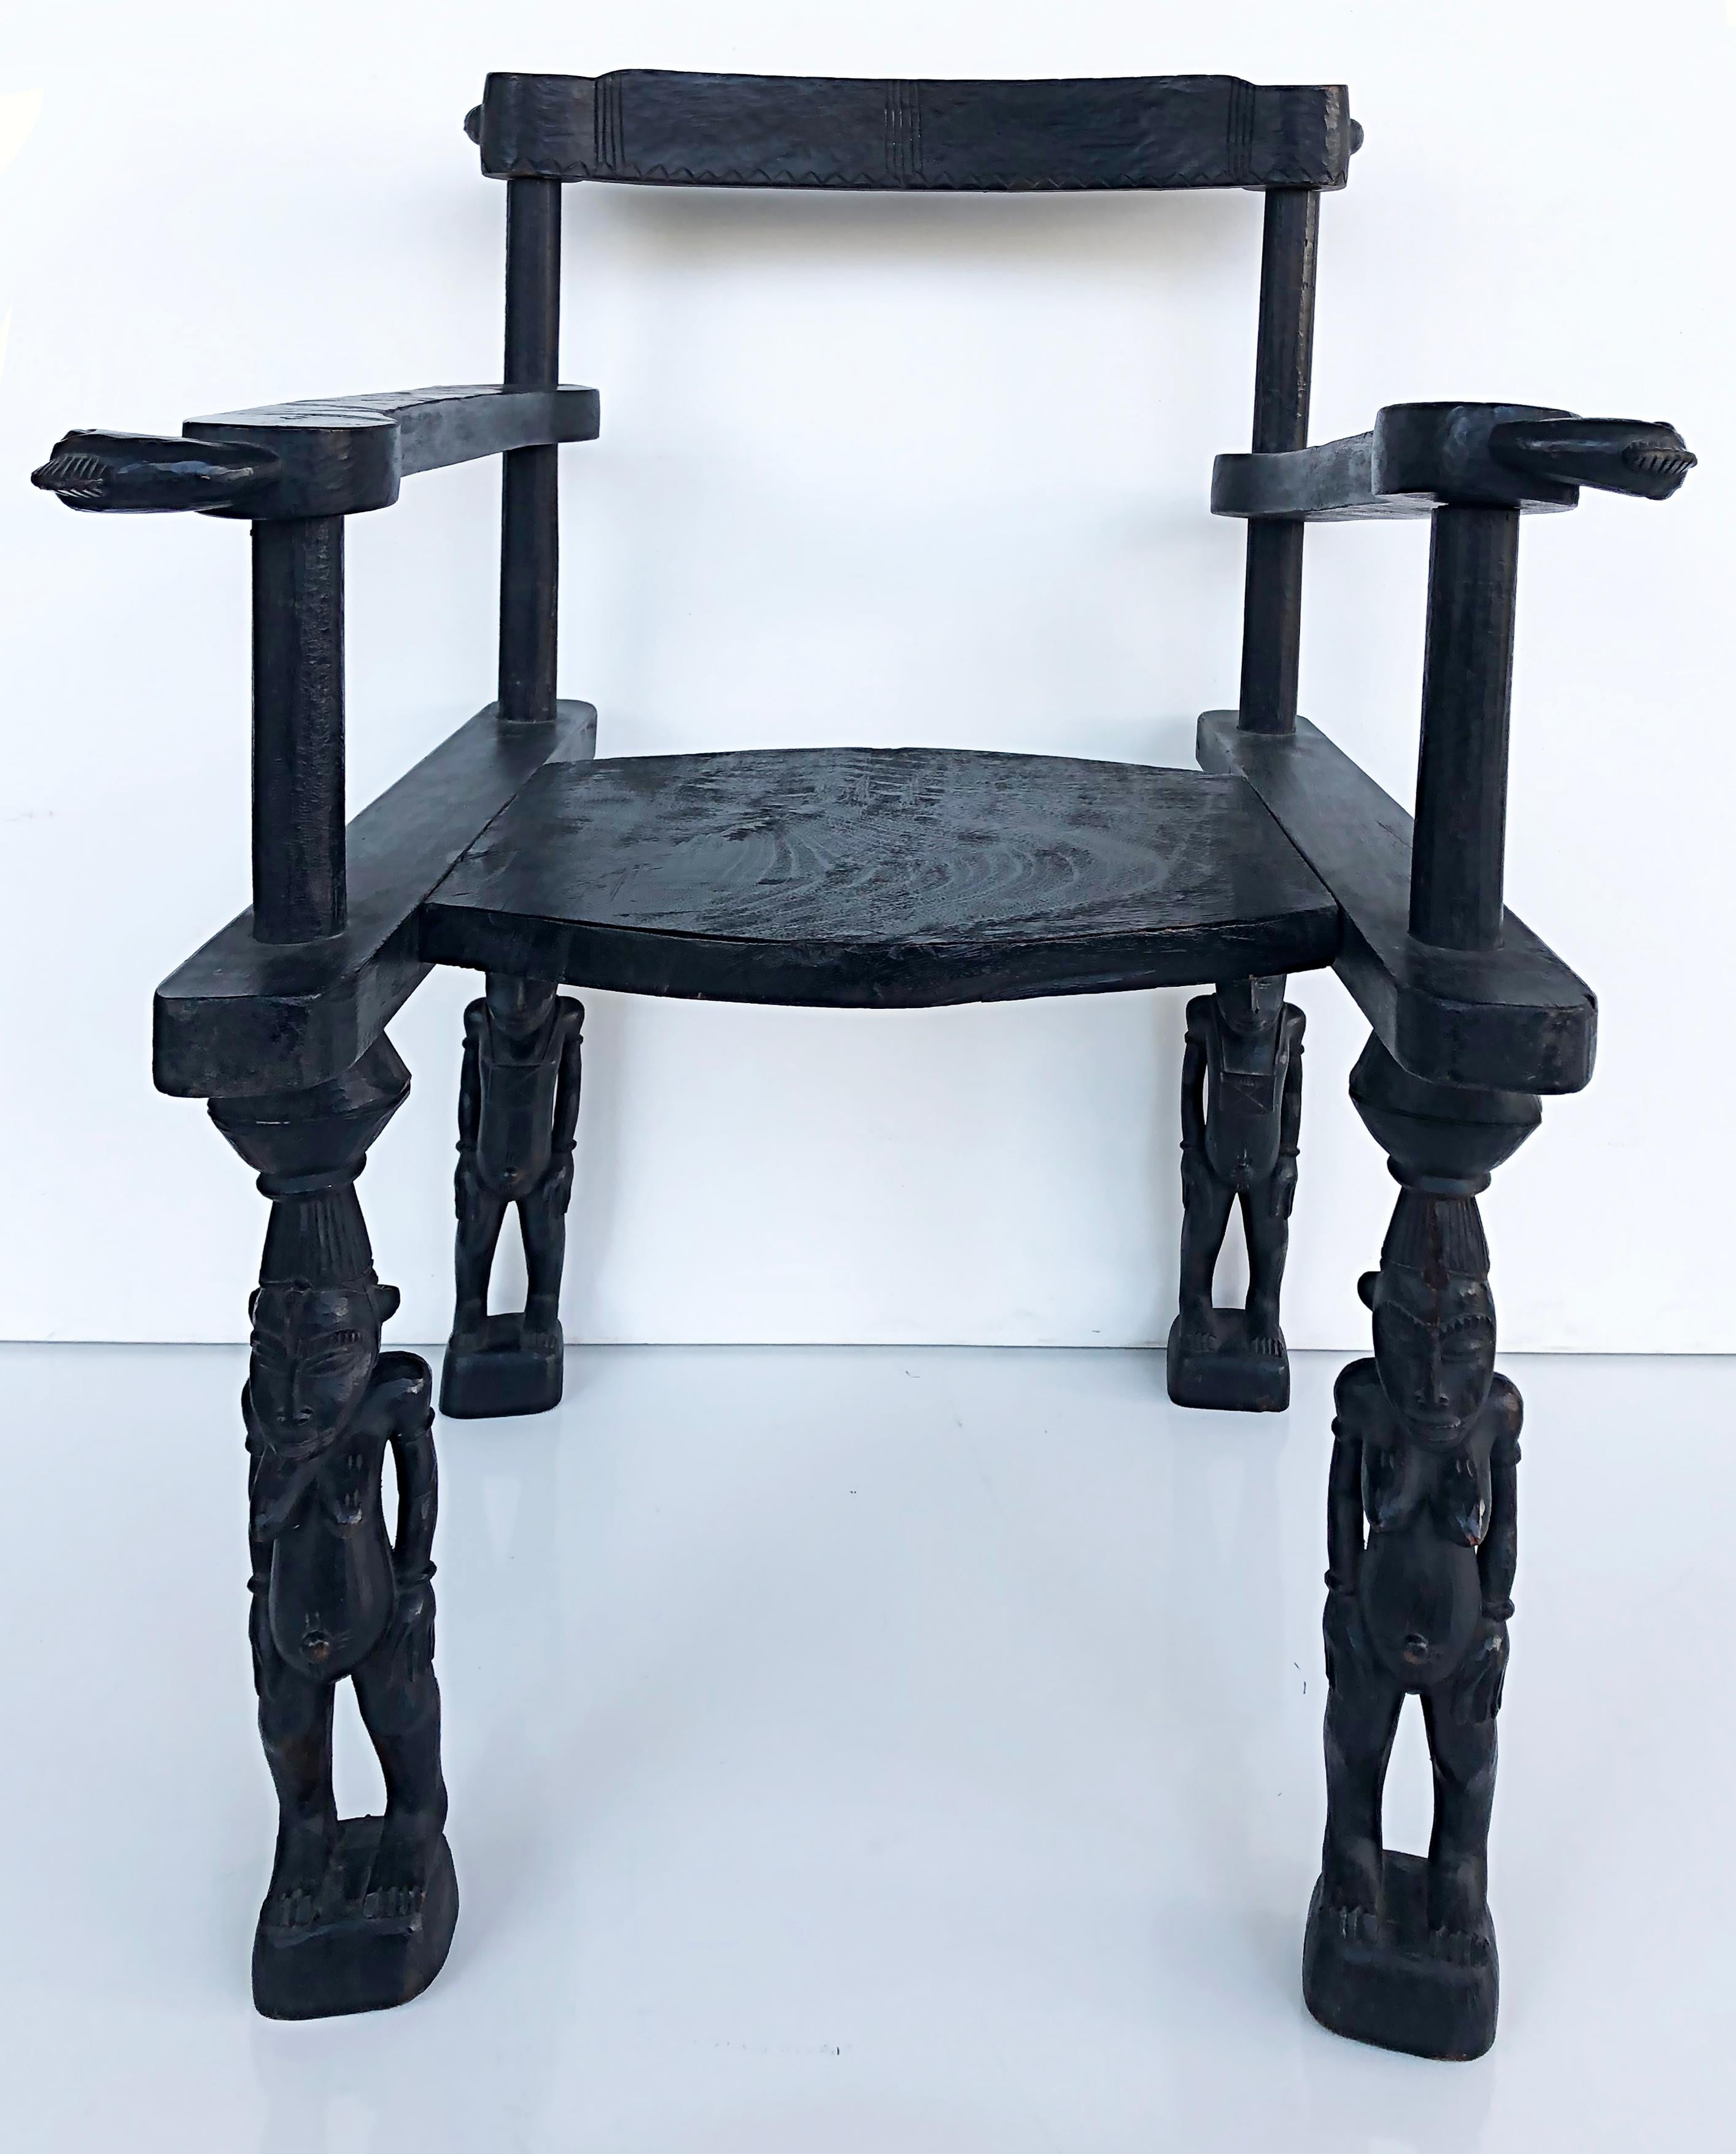 Fauteuil de noblesse africain Senufo sculpté (Côte d'Ivoire) du XXe siècle

Nous vous proposons à la vente un fauteuil de noblesse africaine sculpturale du 20e siècle provenant de la Côte d'Ivoire du peuple Senufo. Cette merveilleuse chaise a été